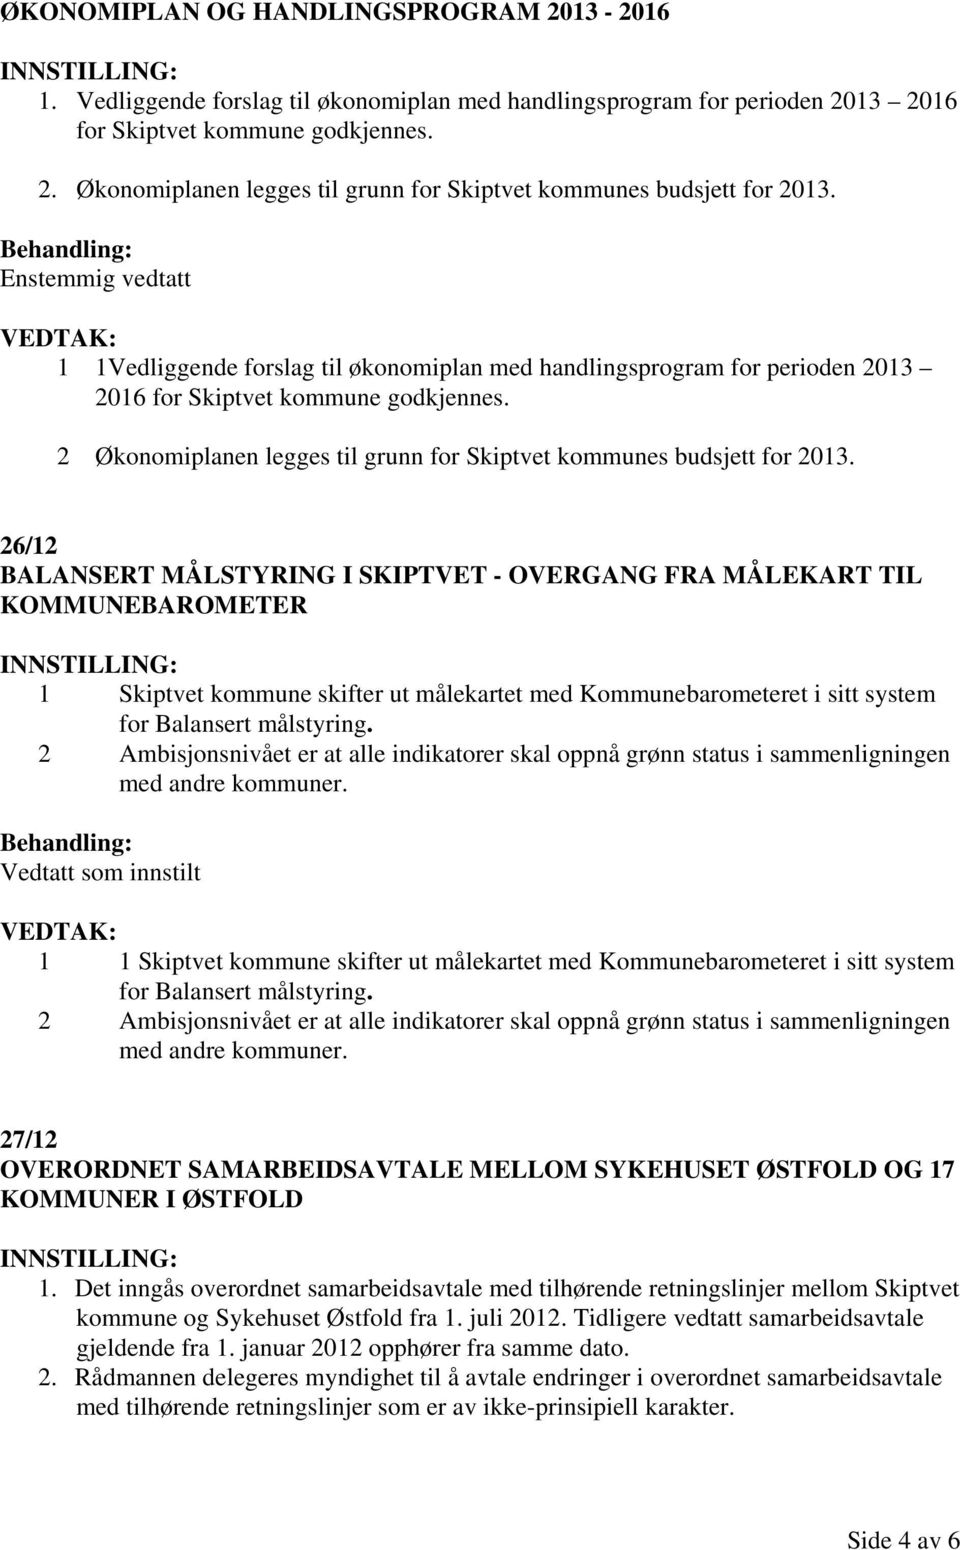 2 Økonomiplanen legges til grunn for Skiptvet kommunes budsjett for 2013.